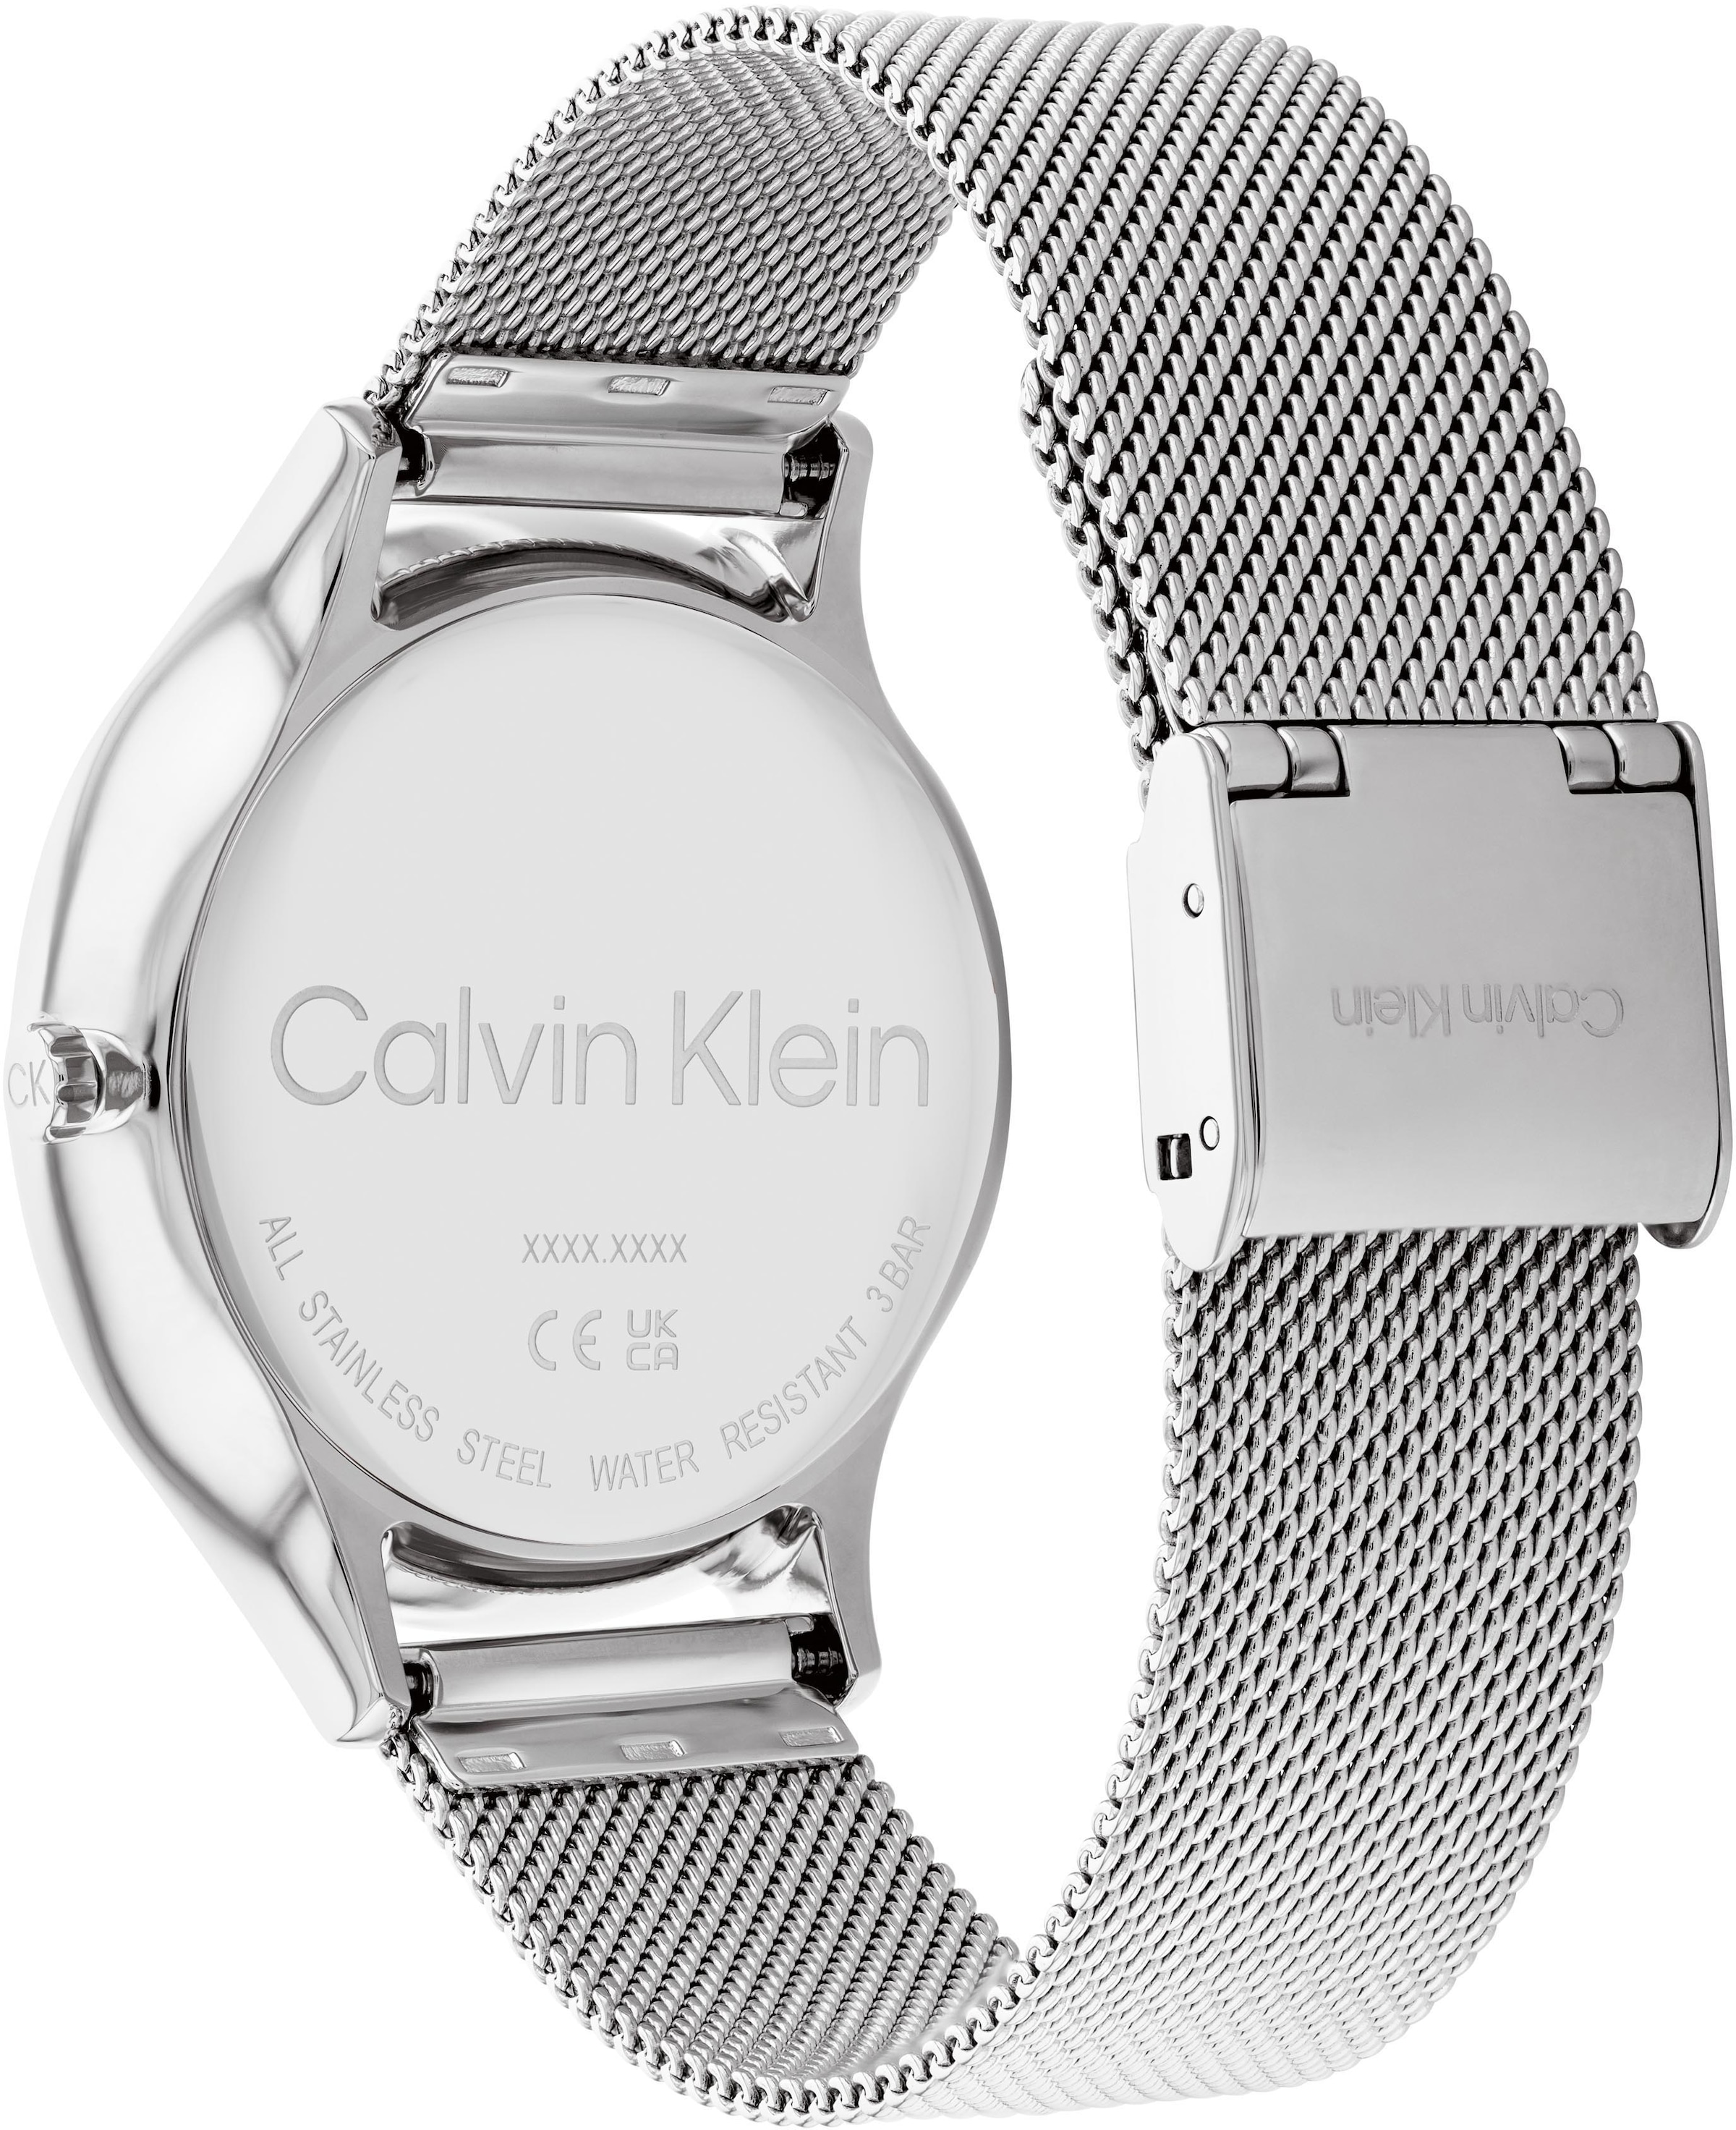 Calvin Klein Multifunktionsuhr »Timeless Multifunction, 25200104«, Quarzuhr, Armbanduhr, Damenuhr, Datum, 12/24-Stunden-Anzeige